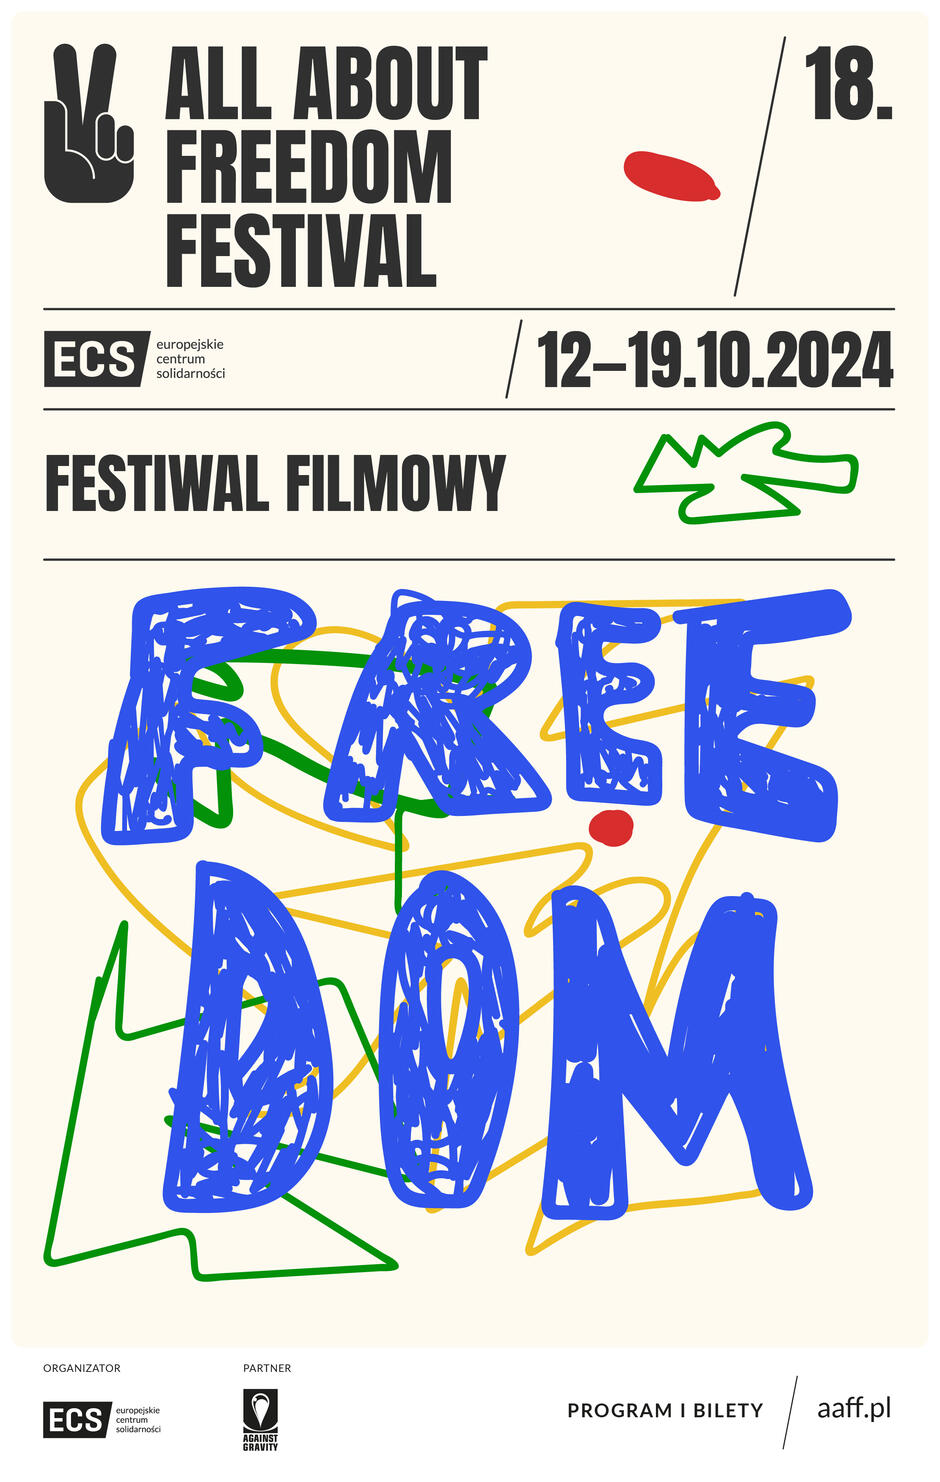 prosty graficzny plakat z napisami zapowiadającymi festiwal